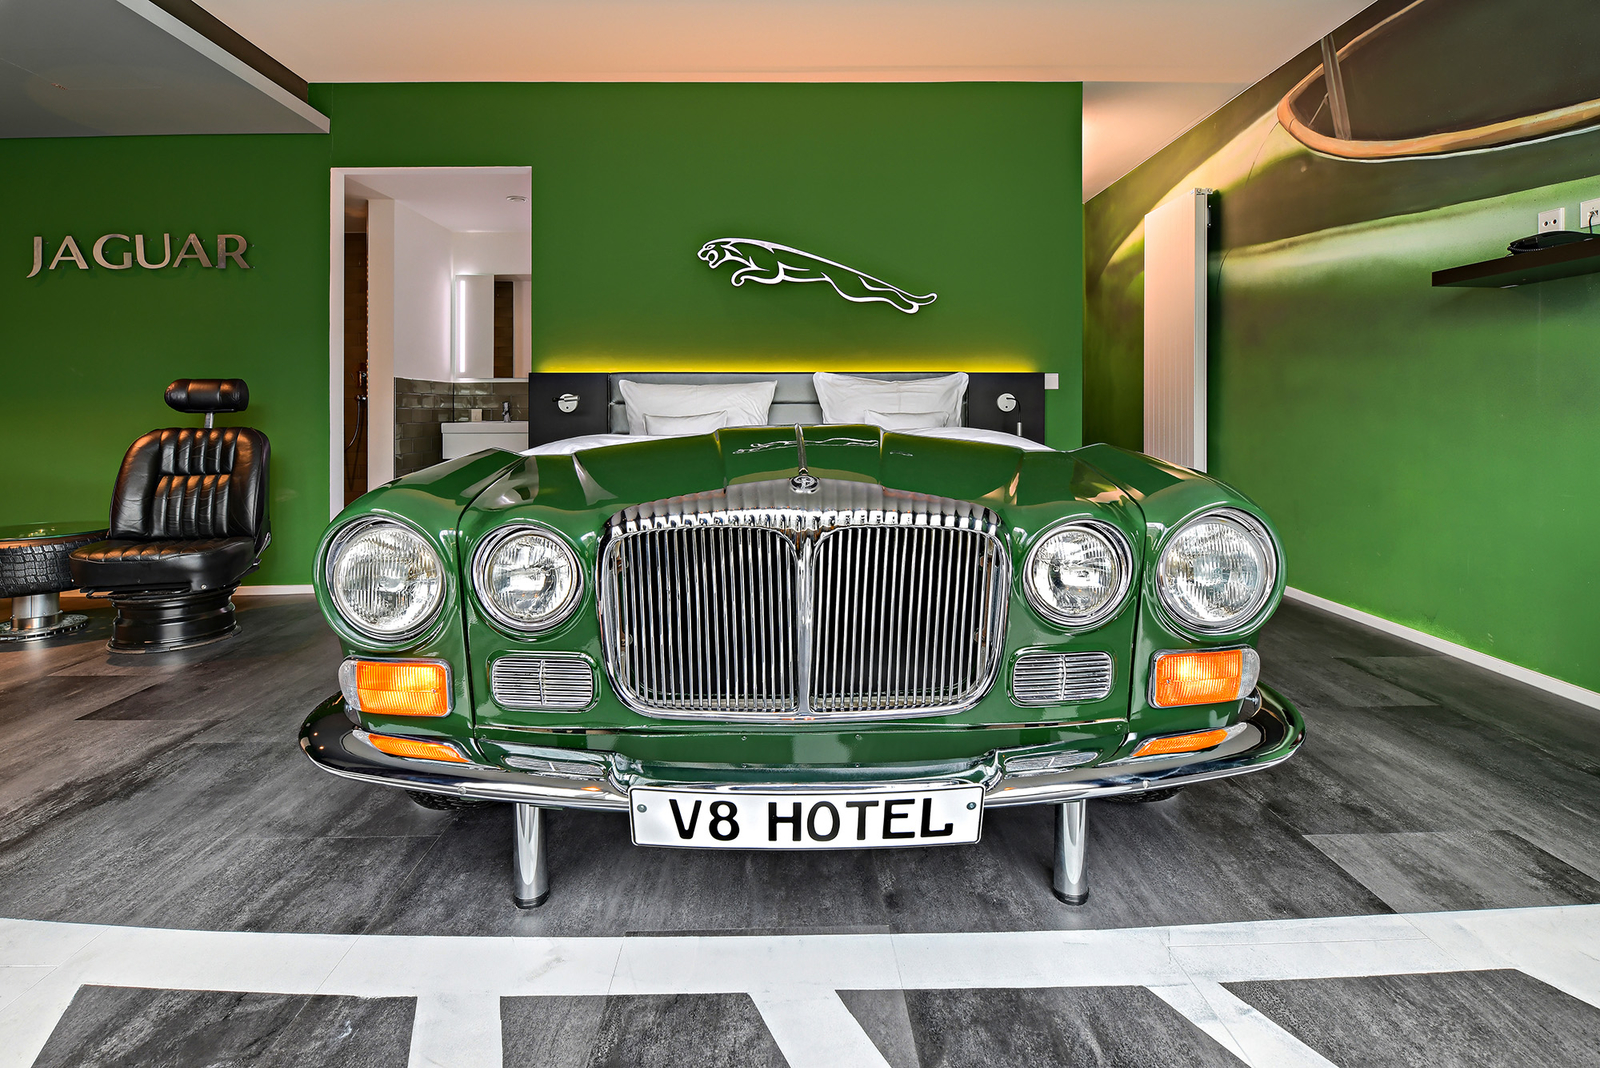 Grünes Autobett neben einem schwarzem Sessel aus einem Autositz im Jaguar-Themenzimmer im V8 Hotel an einer grünen Wand mit silbernem Jaguar-Logo